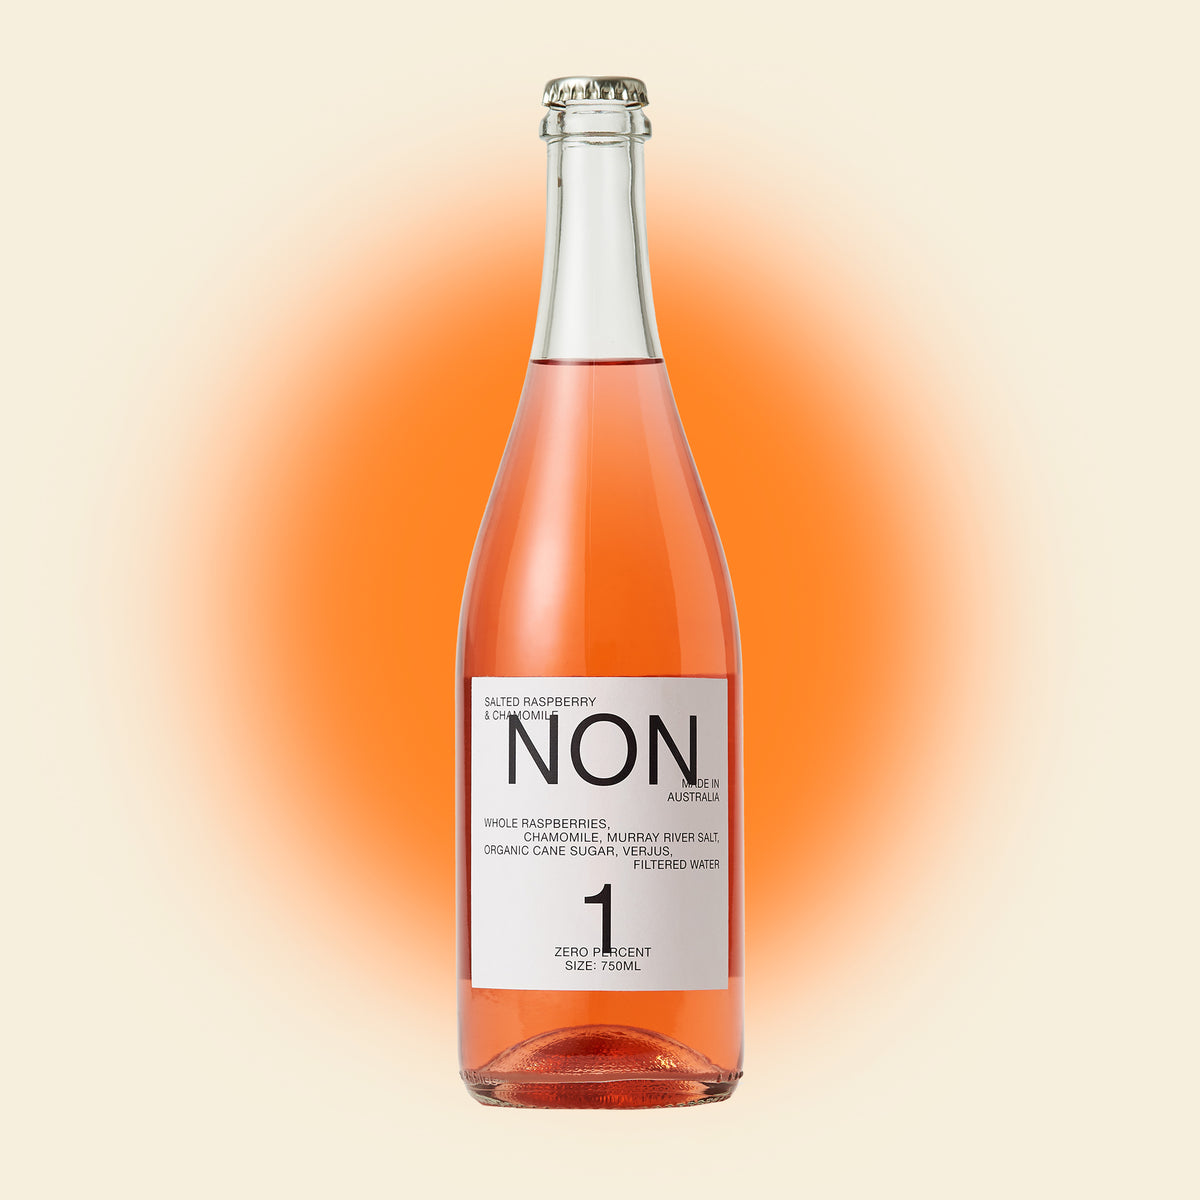 Non No.1 Nonalcoholic Wine